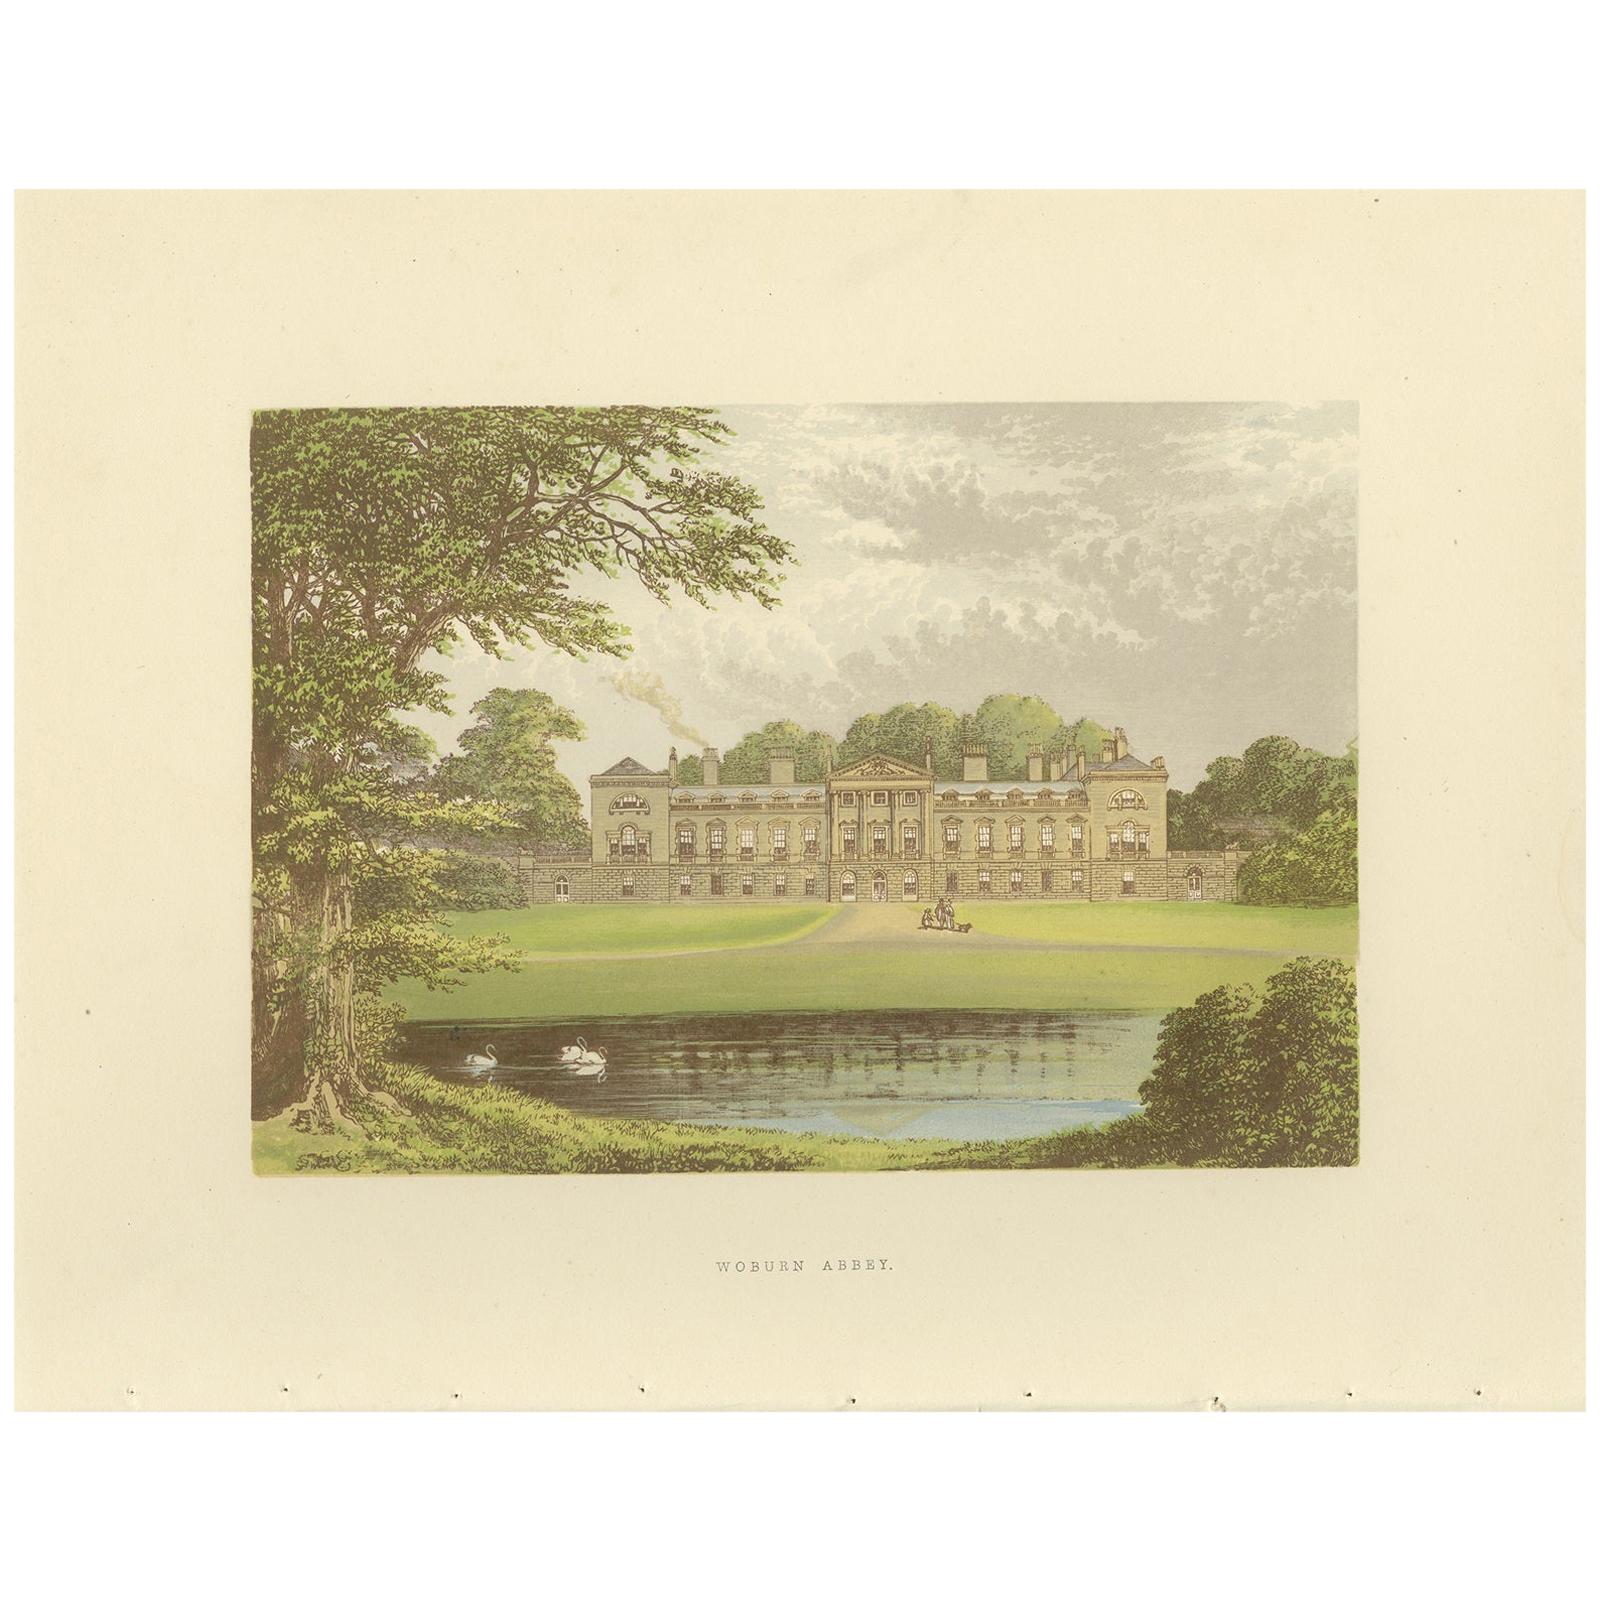 Impression ancienne de l'abbaye de Woburn par Morris, datant d'environ 1880